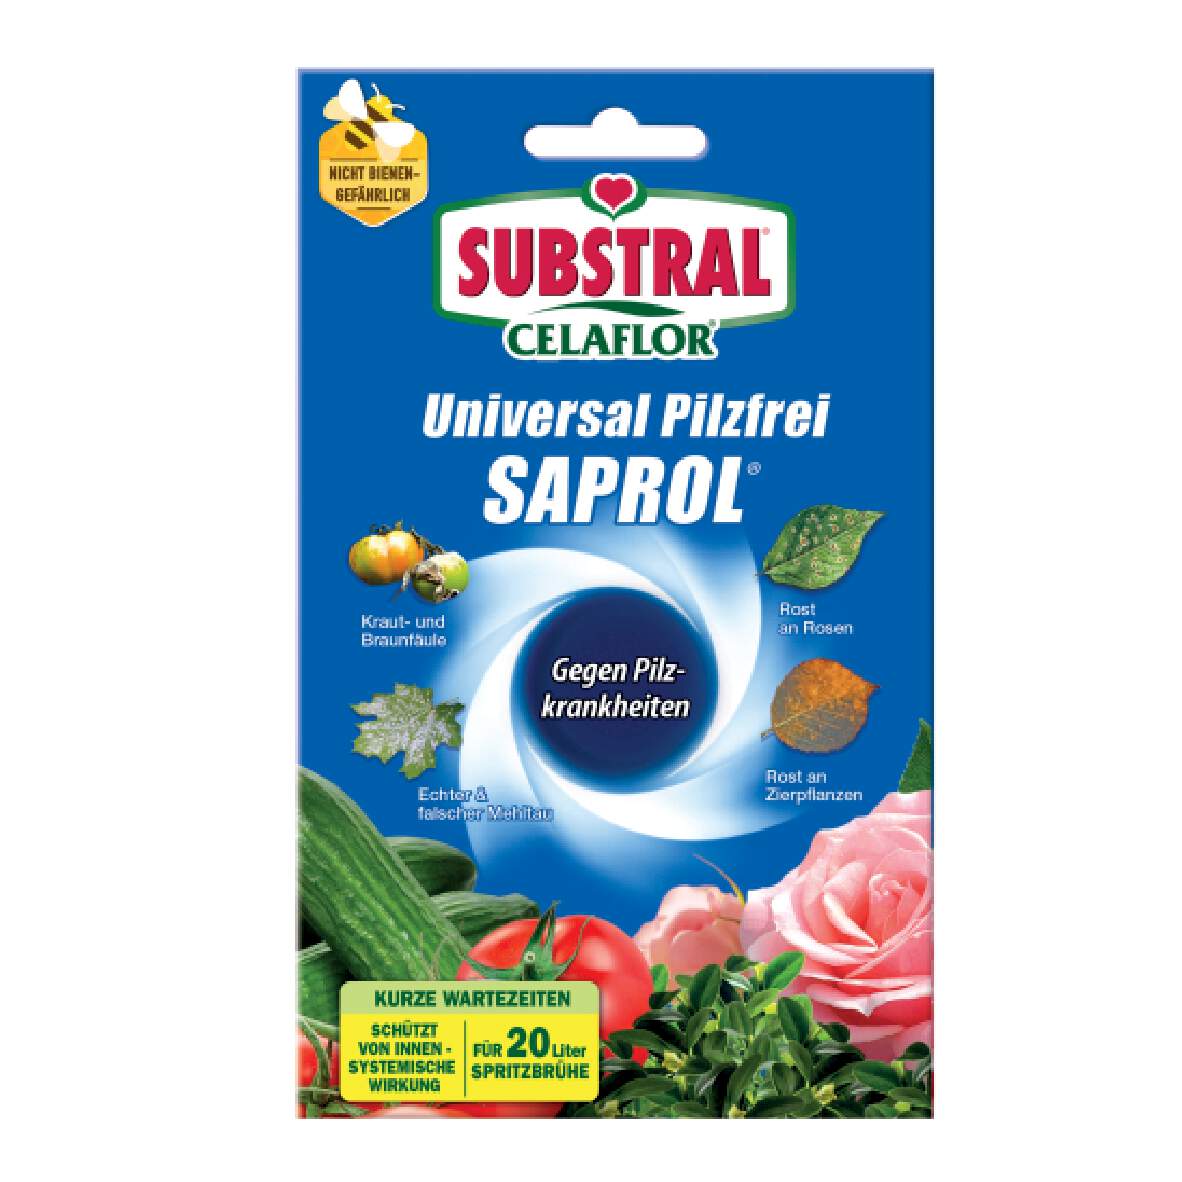 1278958 - Pilzfrei Saprol CF Universal Celaflor 4x4ml